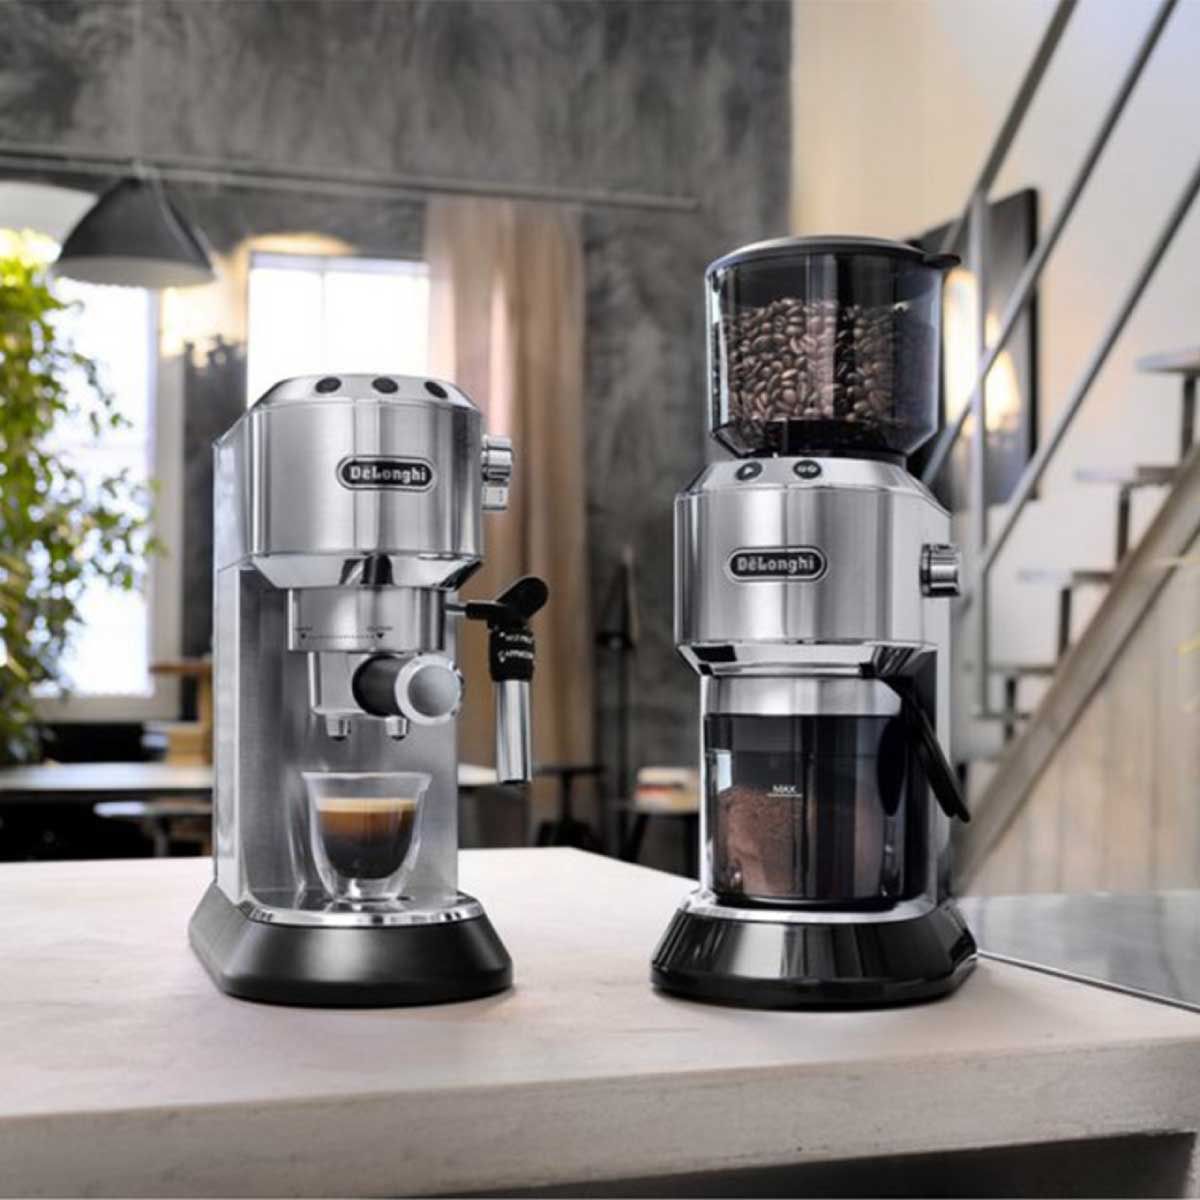 DELONGHI ชุดเครื่องชงกาแฟ  เครื่องชงกาแฟเอสเพรสโซ EC685M + KG521M + TAMPER